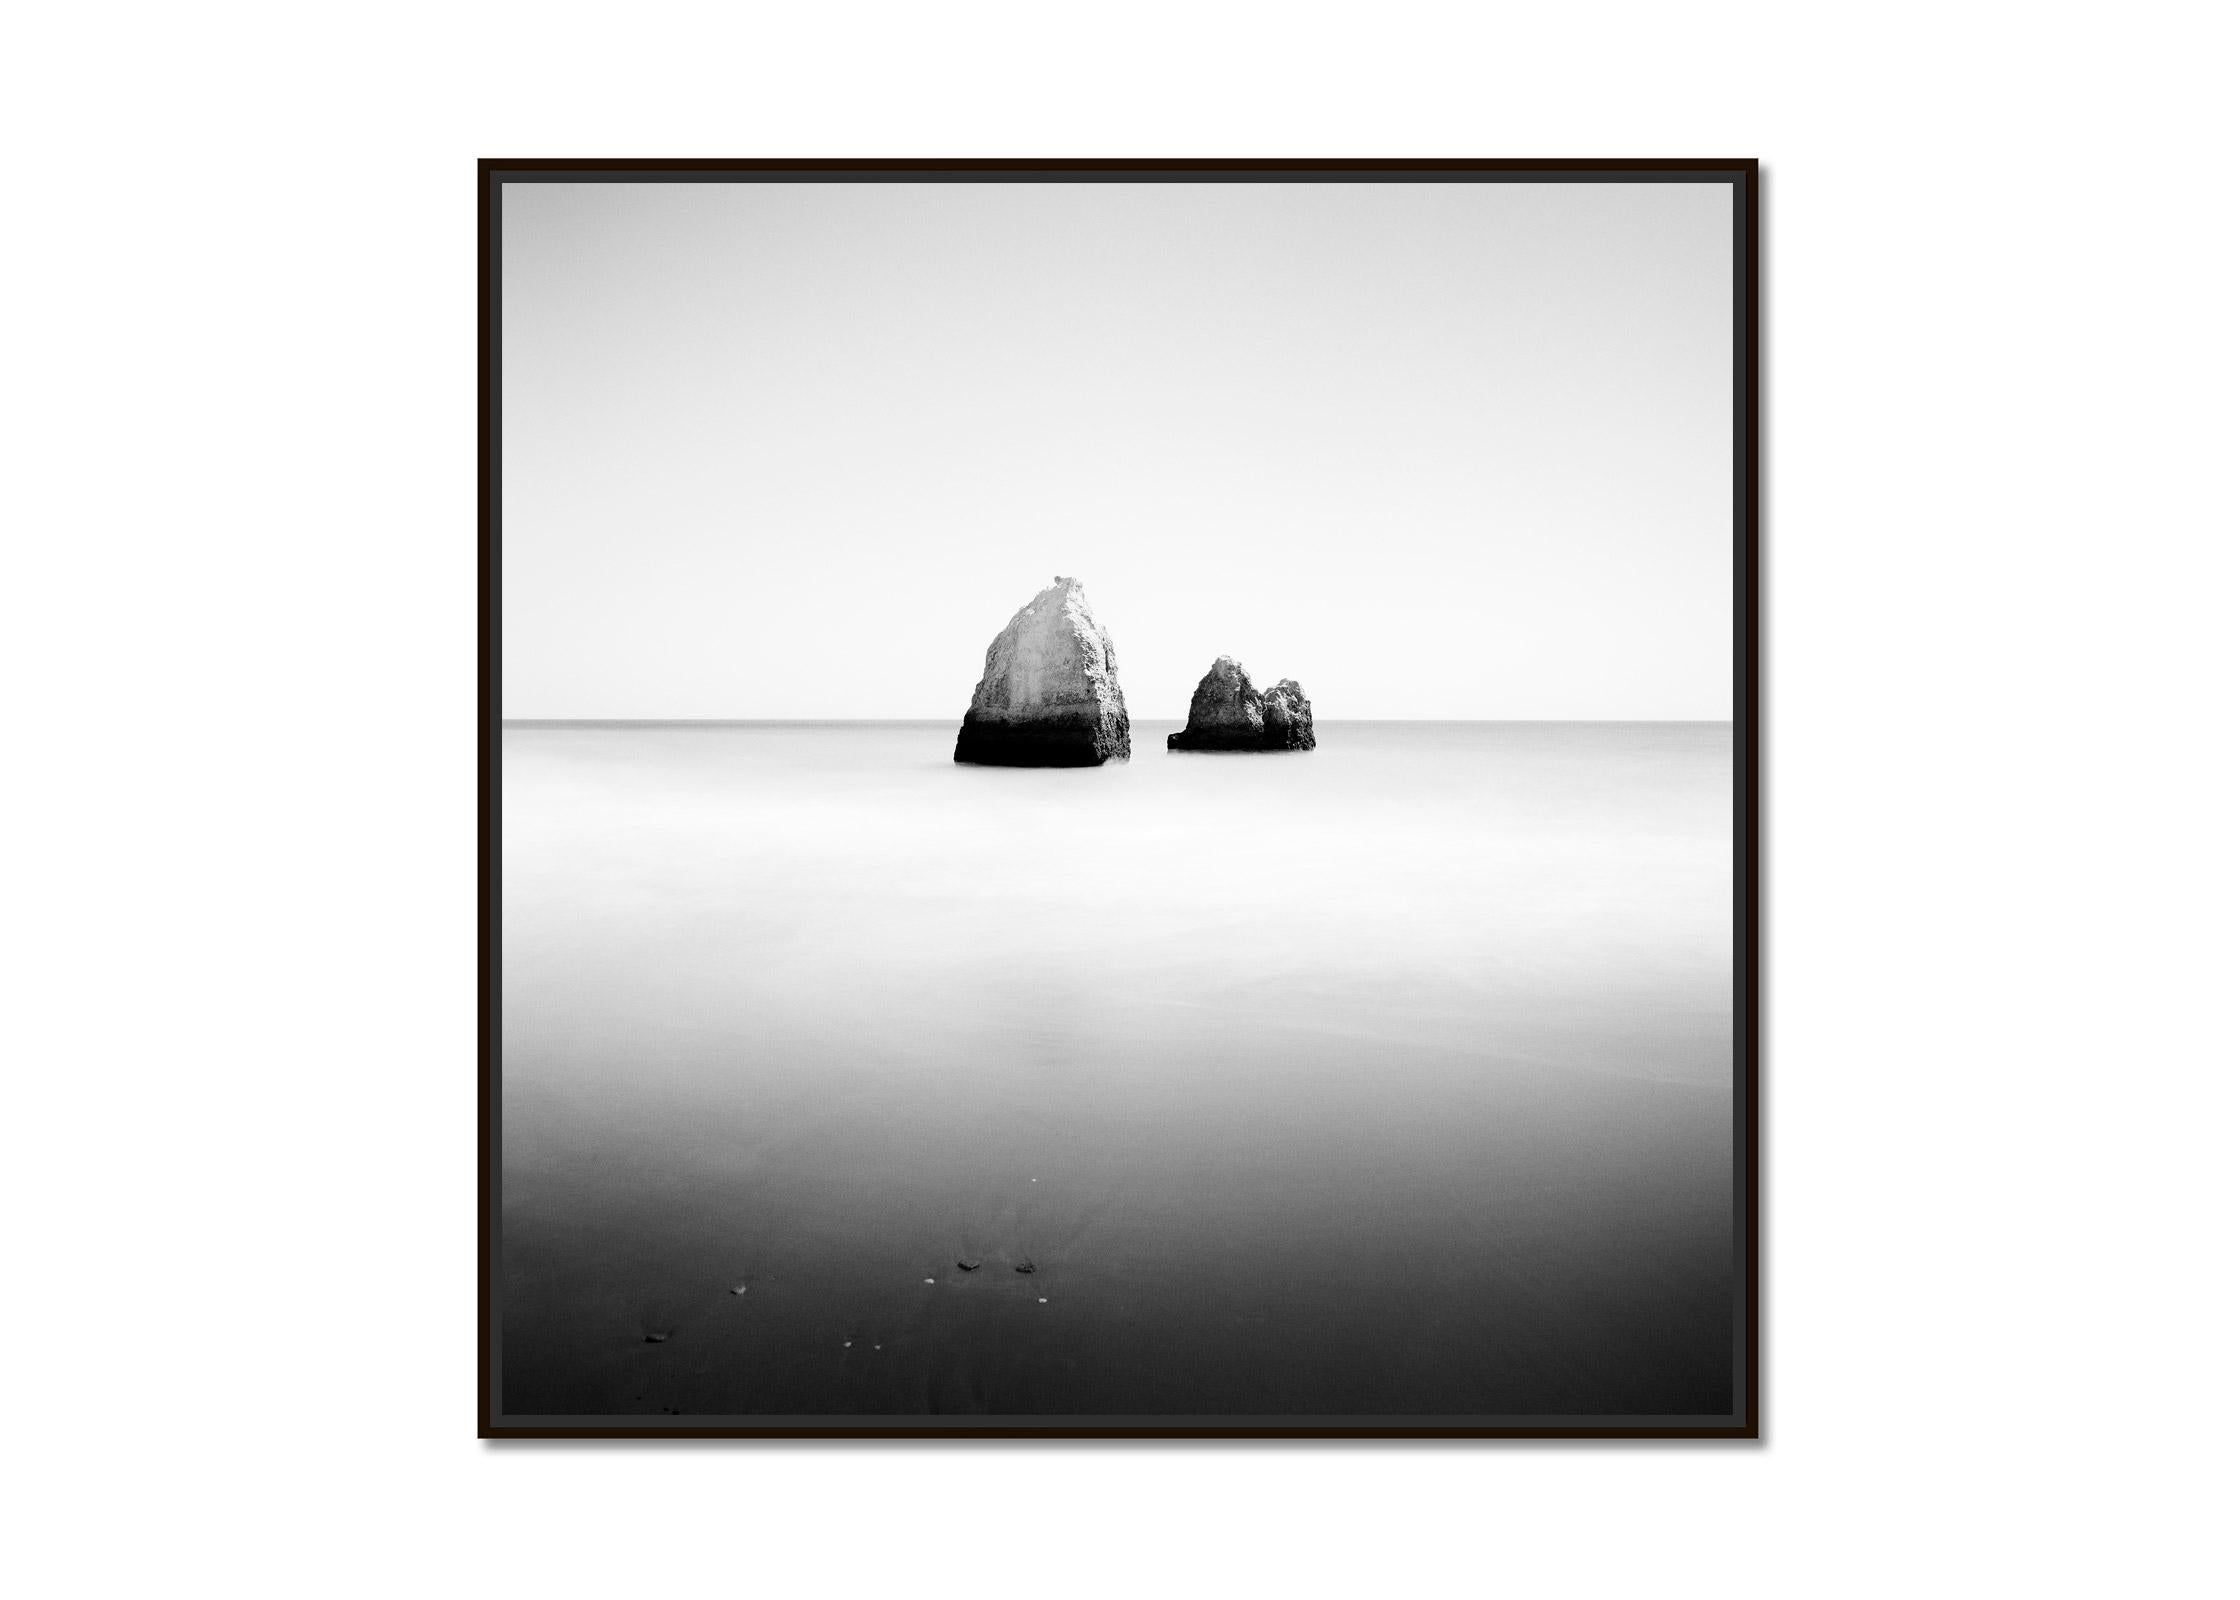 Pyramide engloutie, Espagne, photographie d'art minimaliste en noir et blanc, paysage - Photograph de Gerald Berghammer